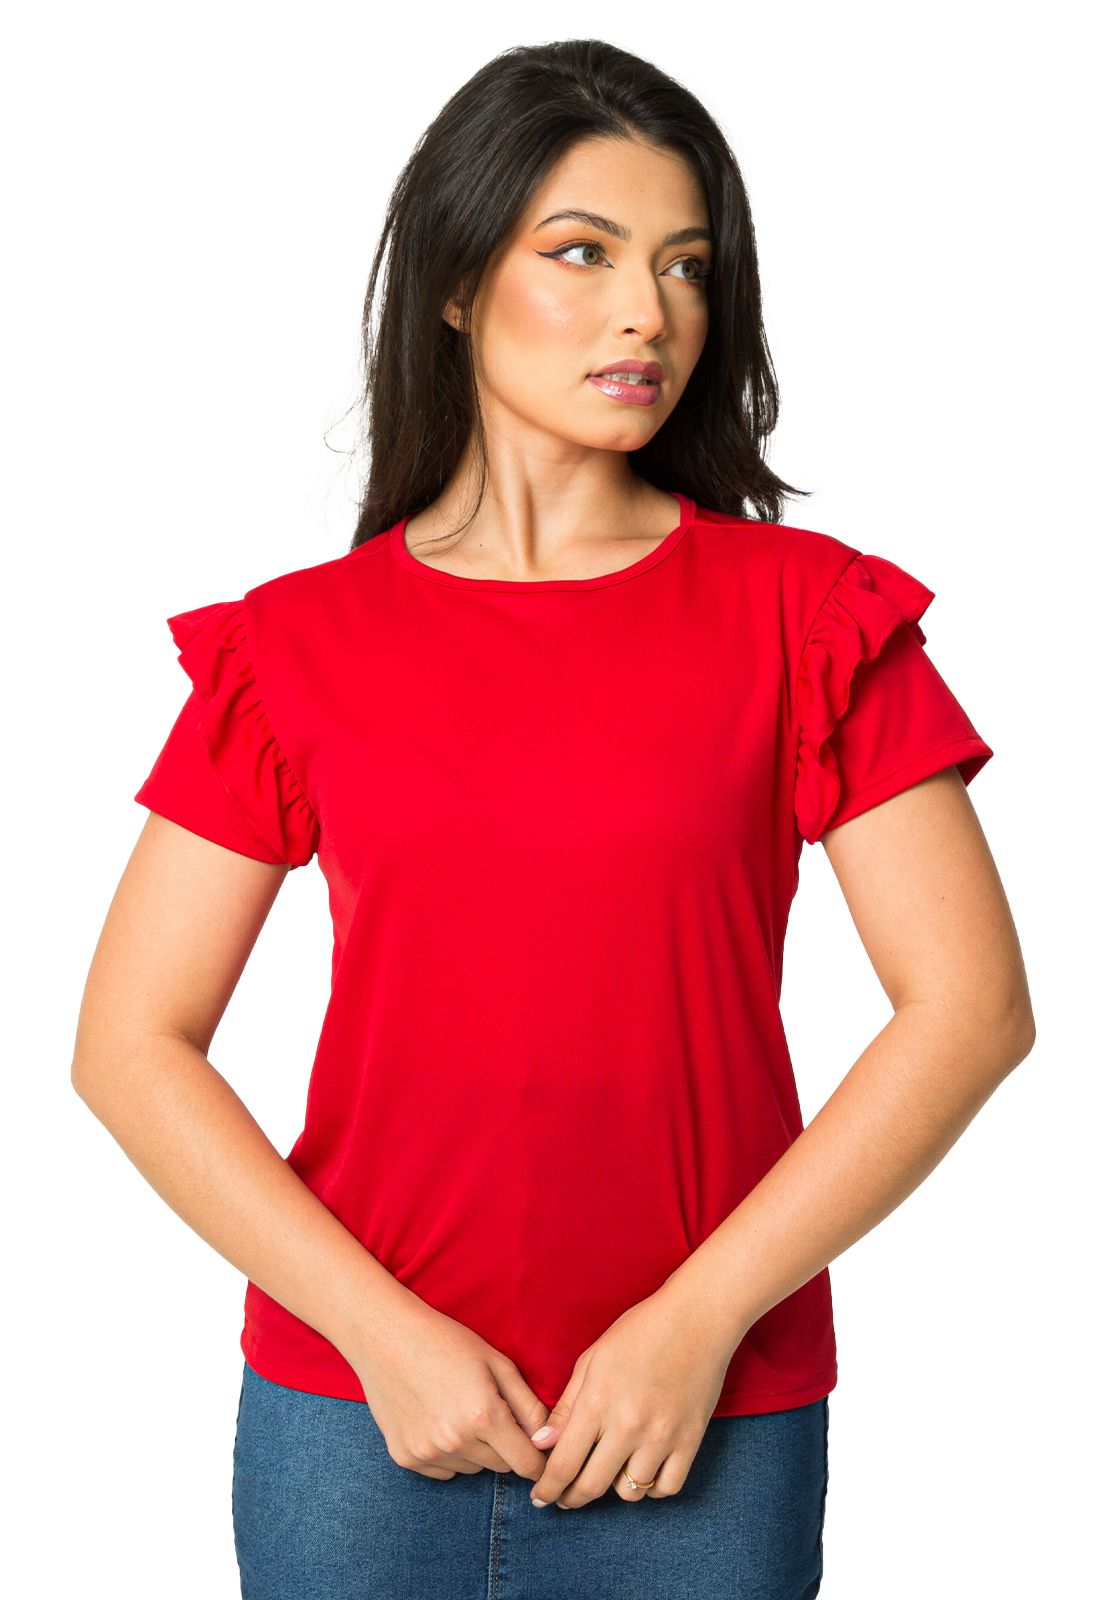 Blusa Vermelha Com Manga Babado Evangélica Anagrom Ref.BSL05 - Anagrom -  Loja de Moda Evangélica a Preço Baixo